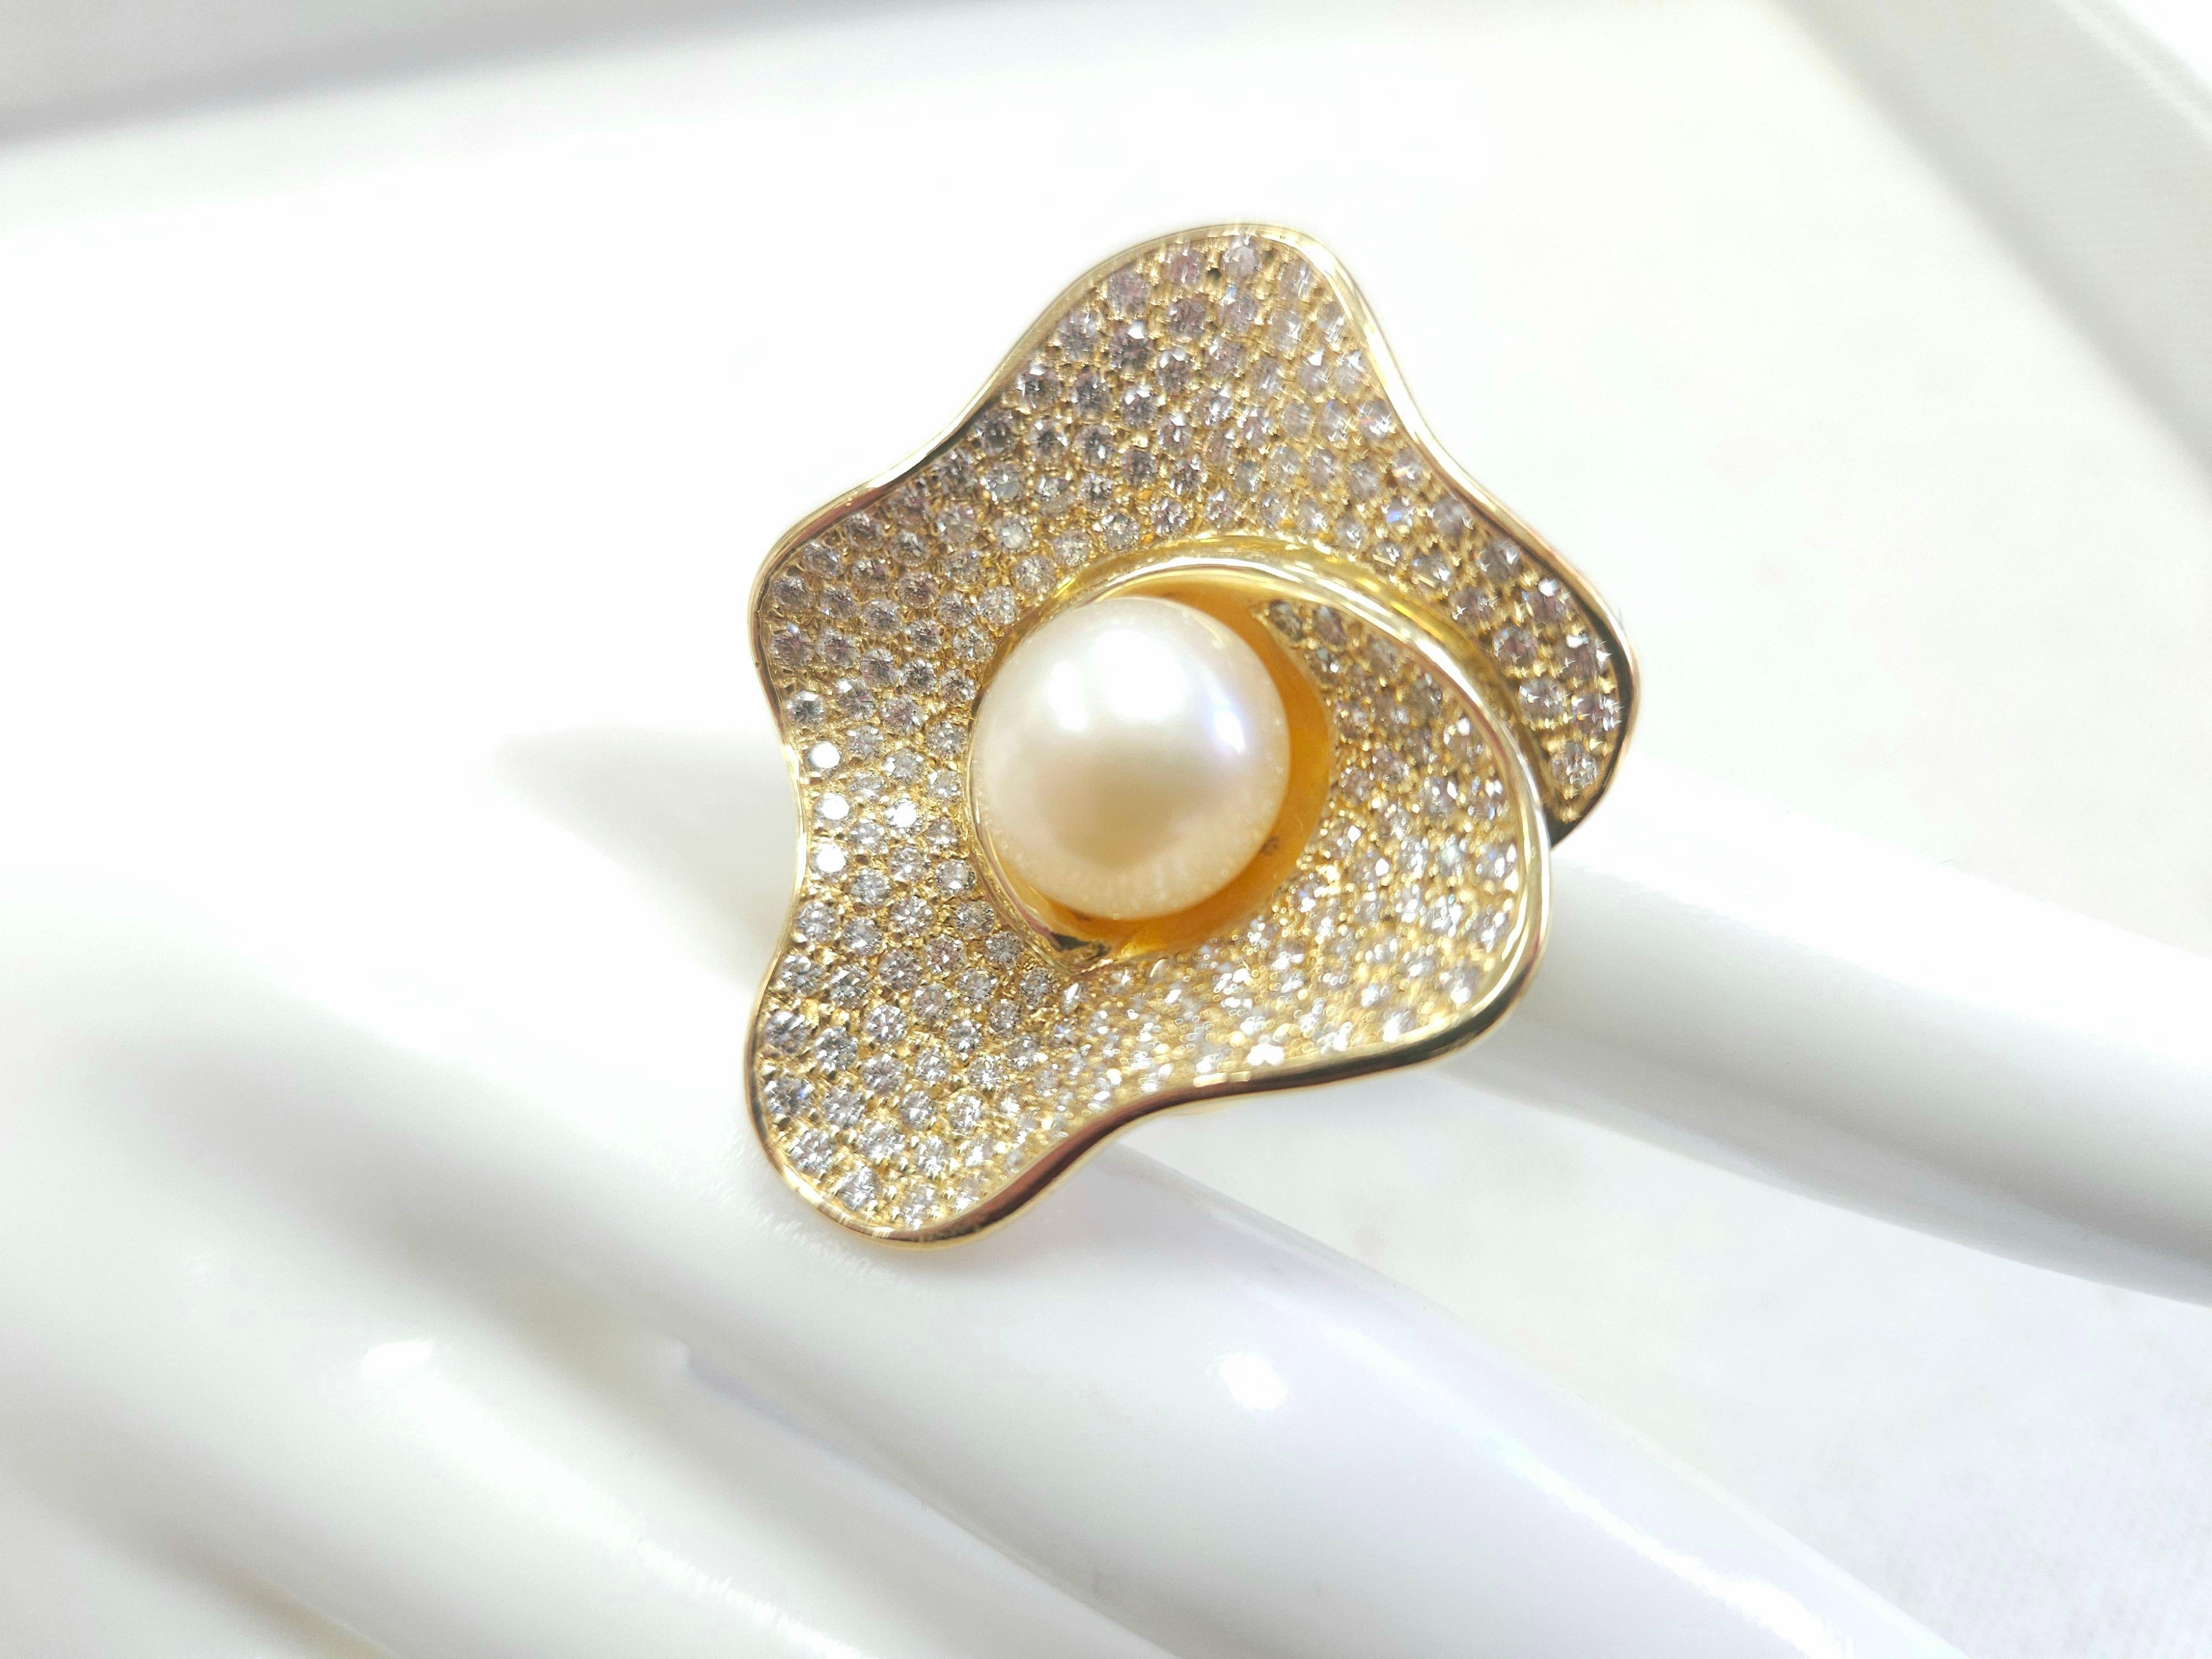 Desginer Hand gemacht Serie, Perle DIAN 18K Gelbgold Ring, Größe 7, Durchschnitt F-VS, 22,95 Gramm.

*Kostenloser Versand innerhalb der U.S.A*